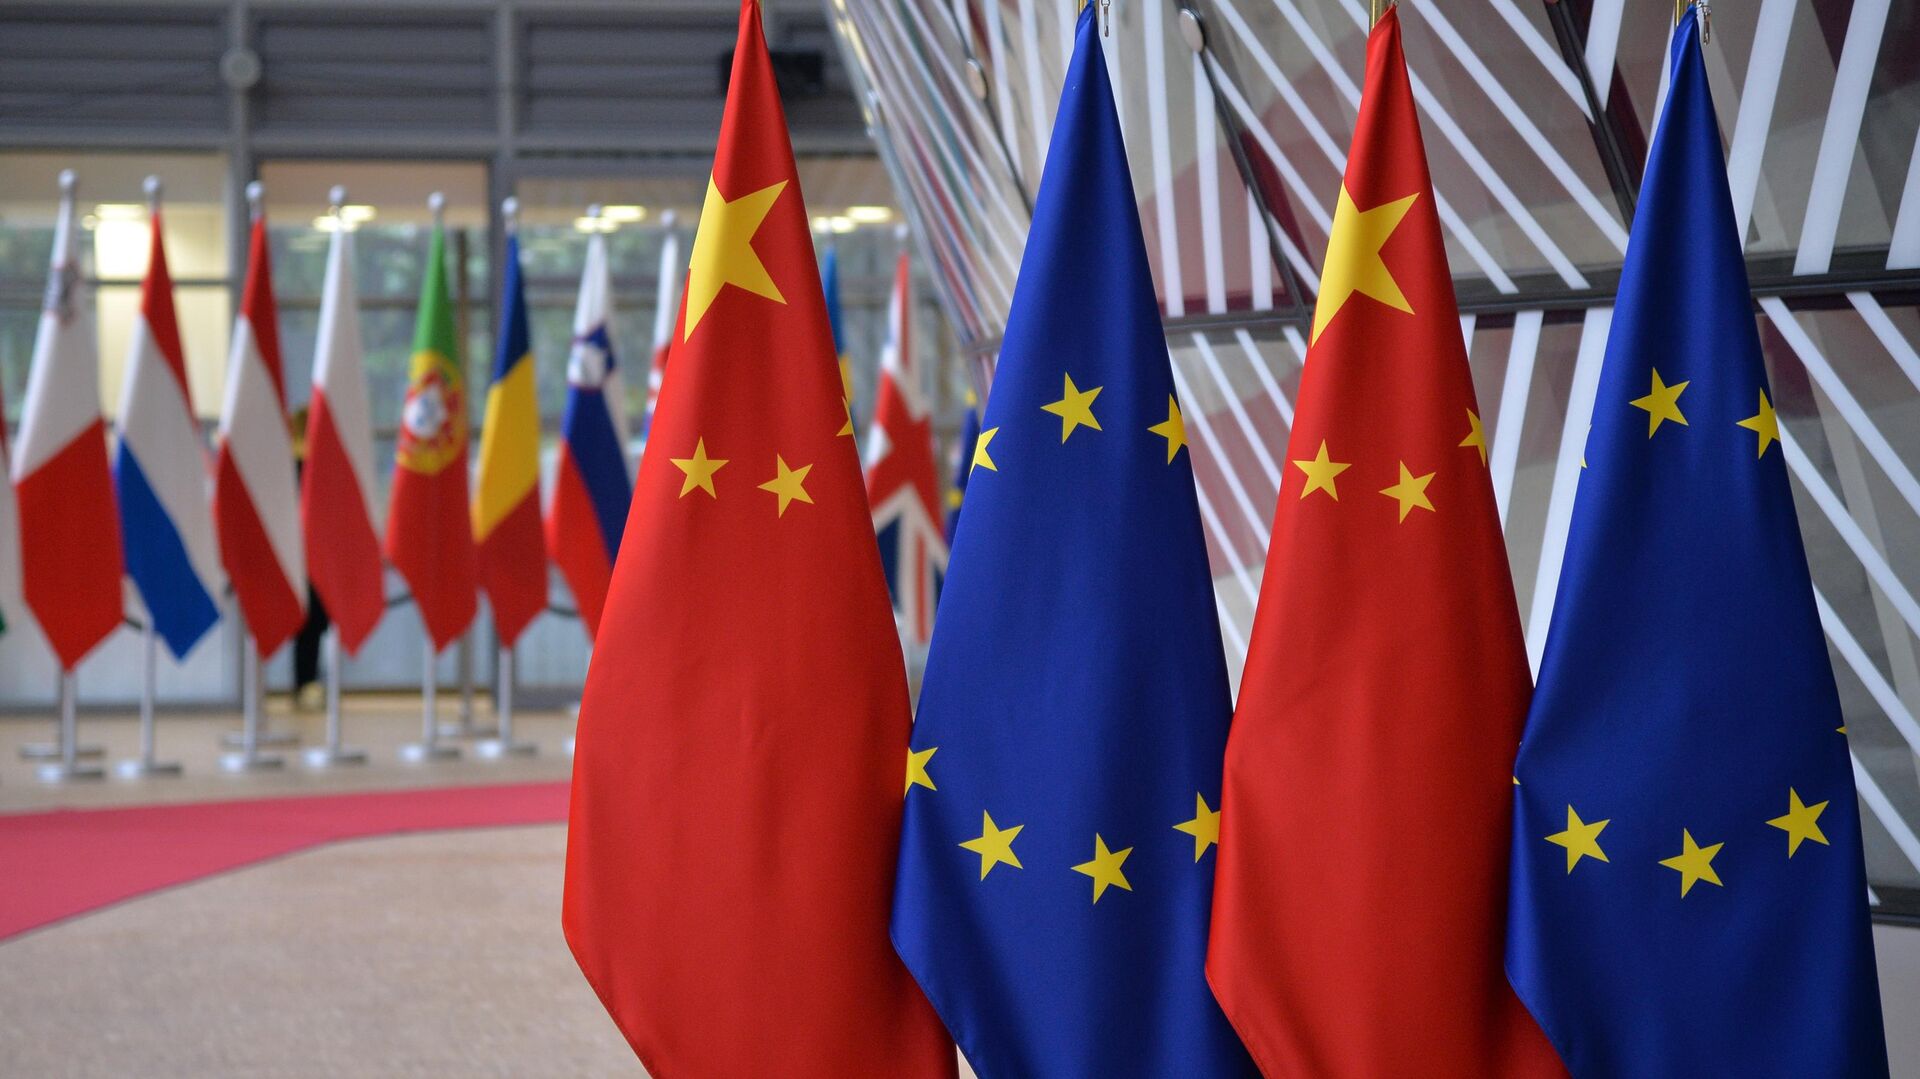 Флаги Европейского союза и государственные флаги КНР на саммите ЕС-КНР в Брюсселе. 9 апеля 2019 - РИА Новости, 1920, 20.12.2022